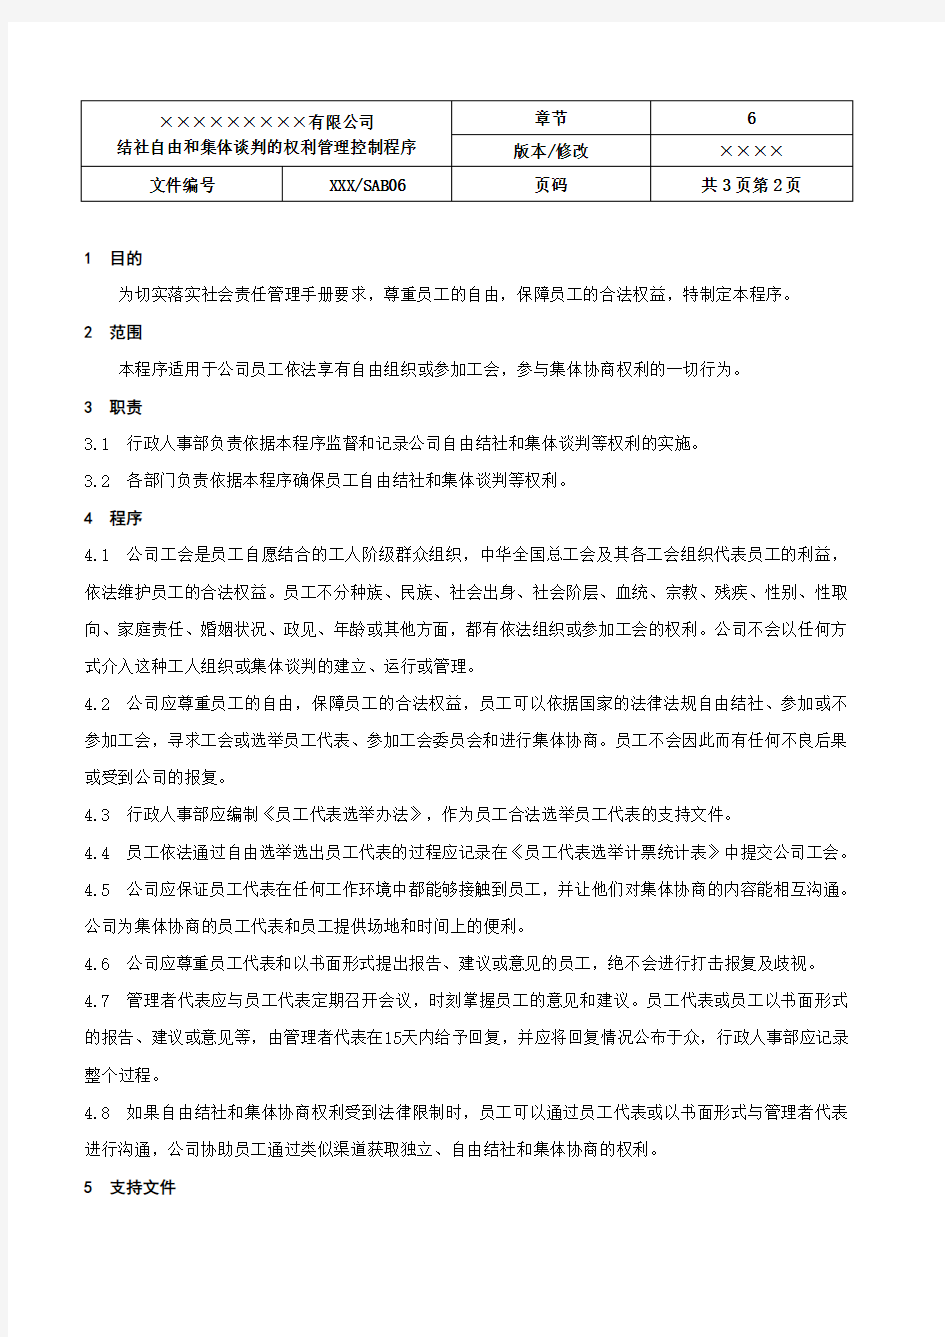 06.结社自由和集体谈判的权利管理控制程序(SAB06)